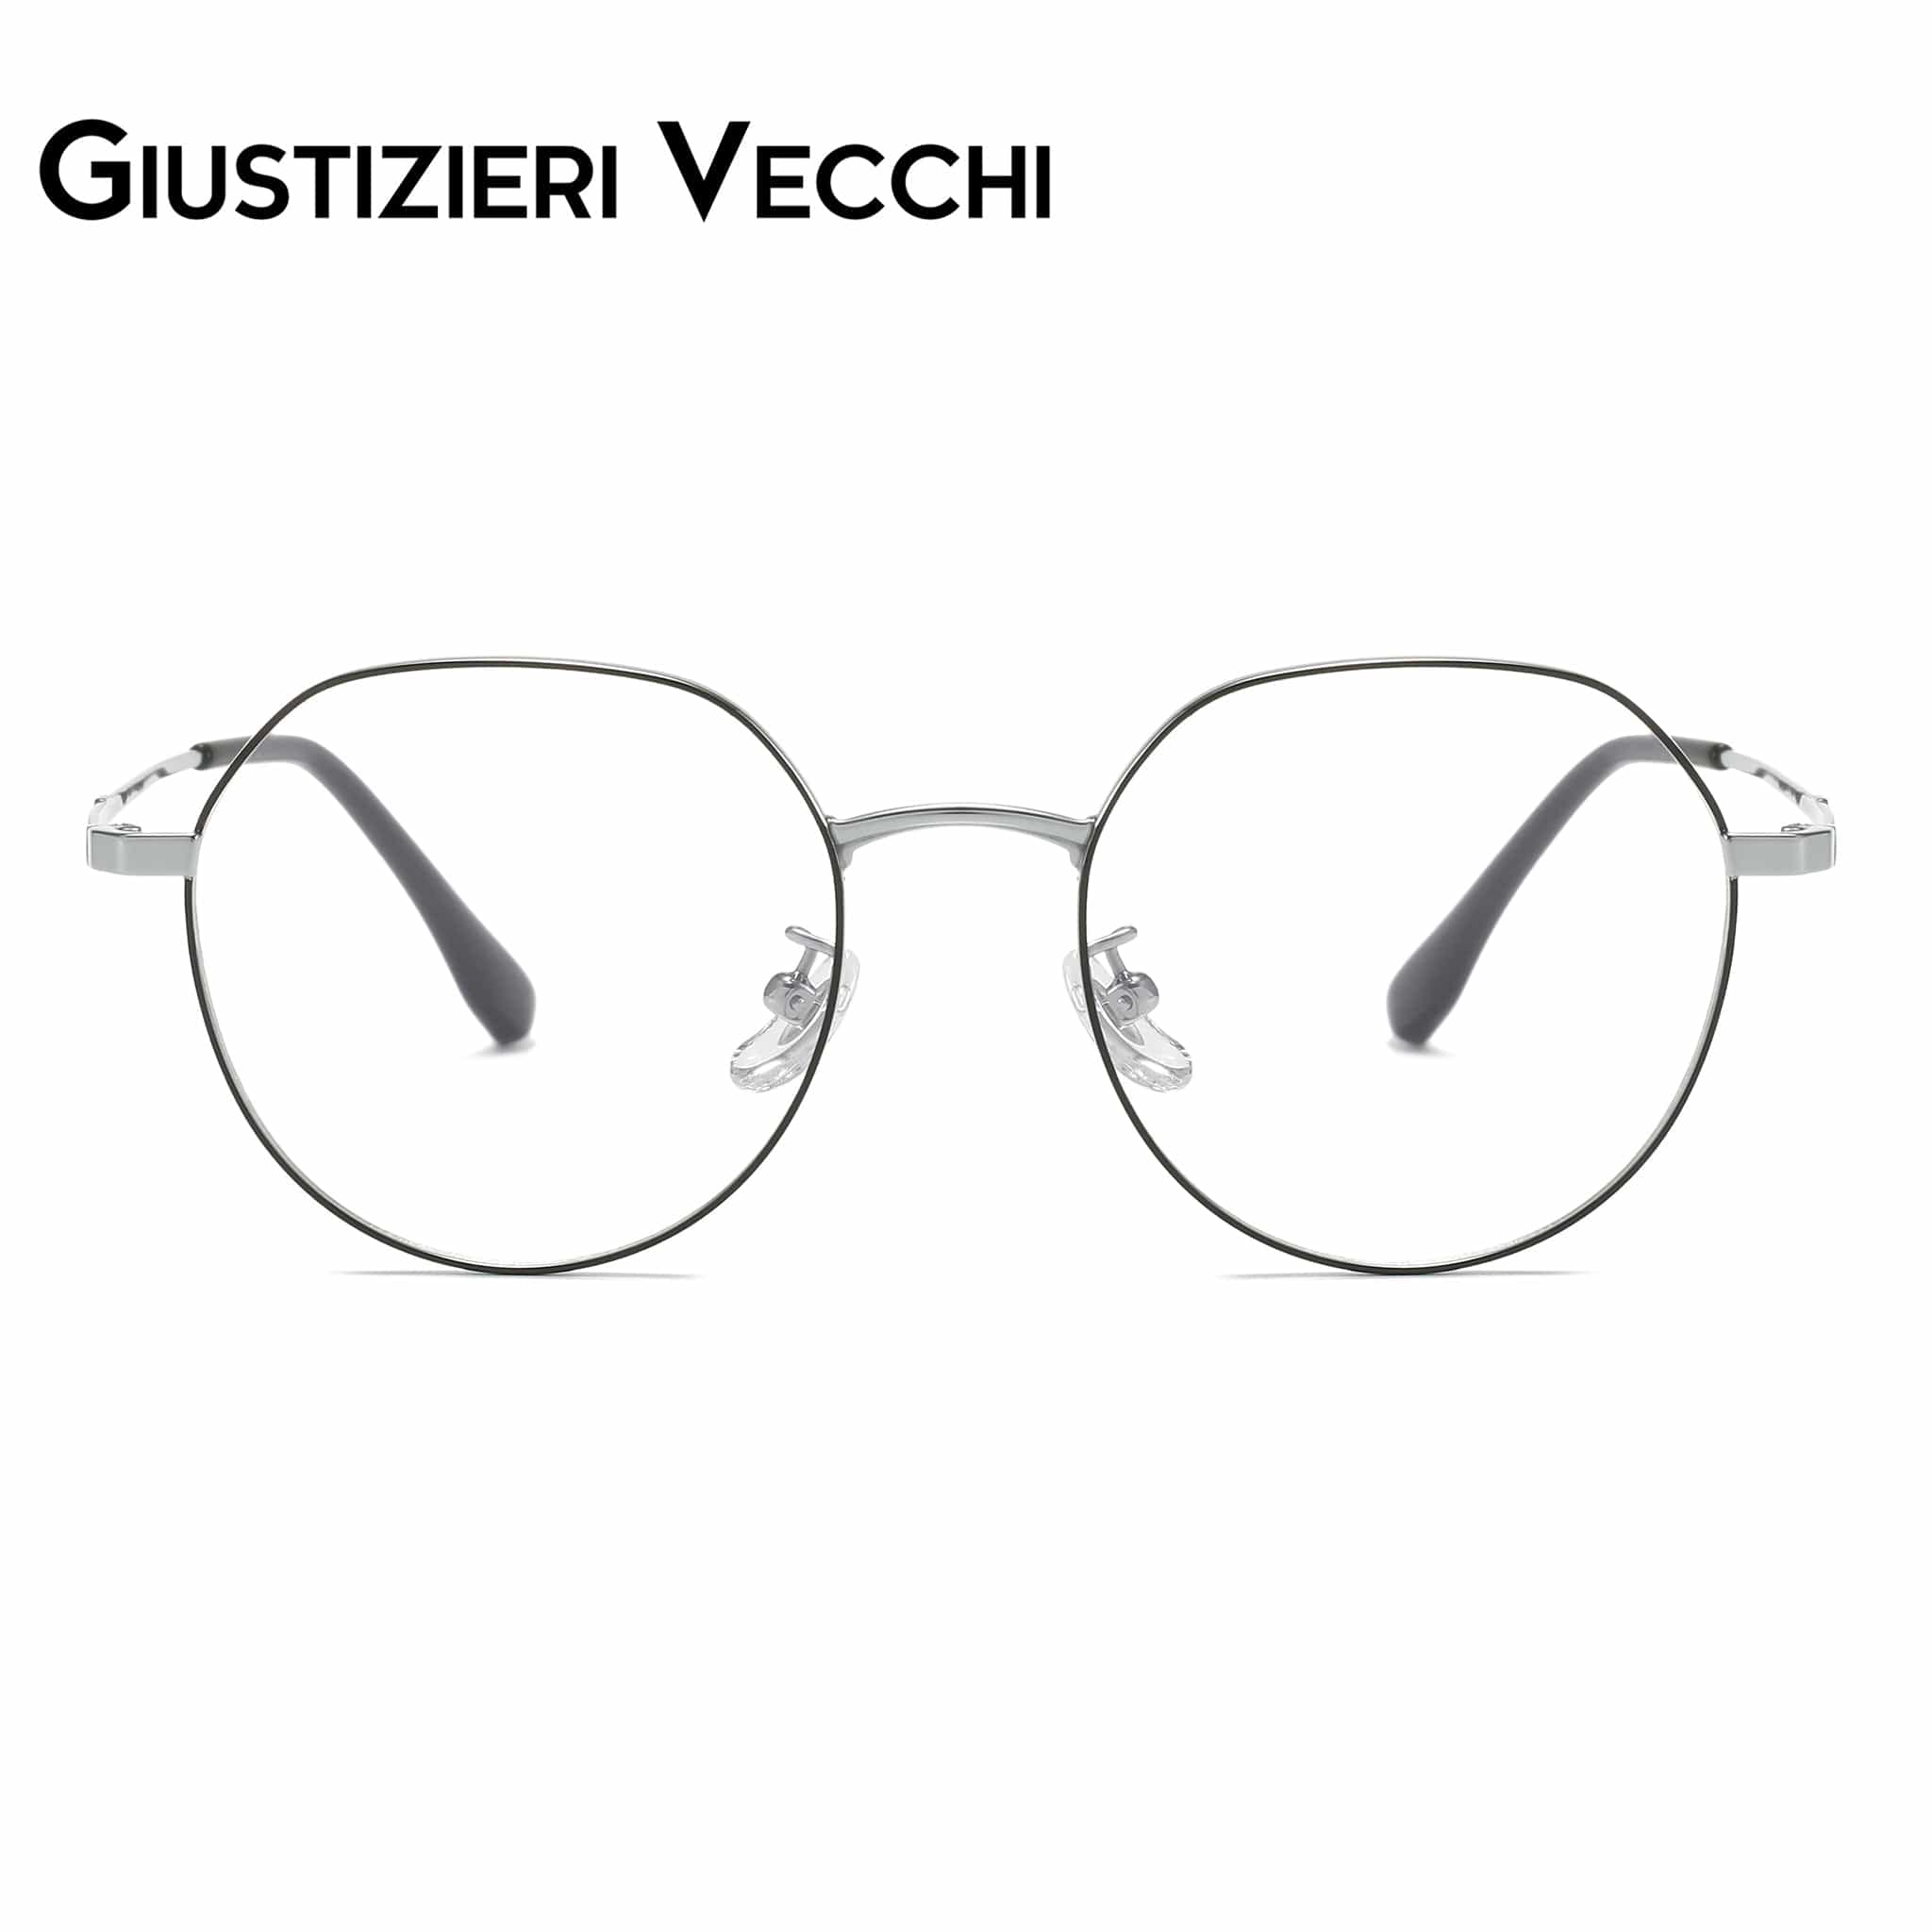 GIUSTIZIERI VECCHI Eyeglasses Small / Black with Grey CoolSonic Uno